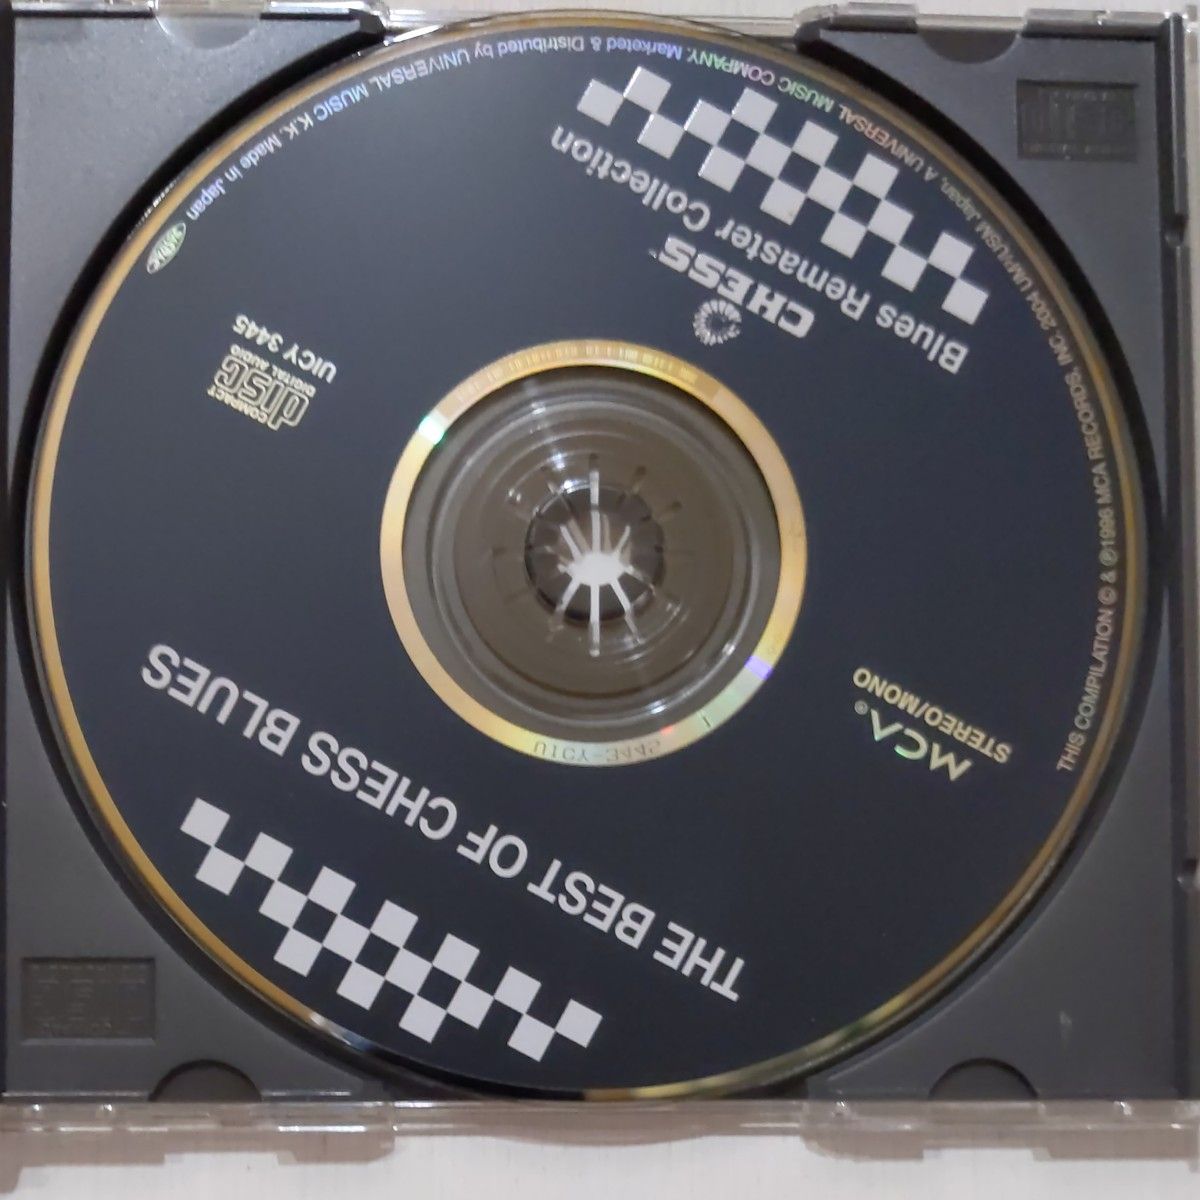 【国内盤CD】 ベストオブチェスブルース